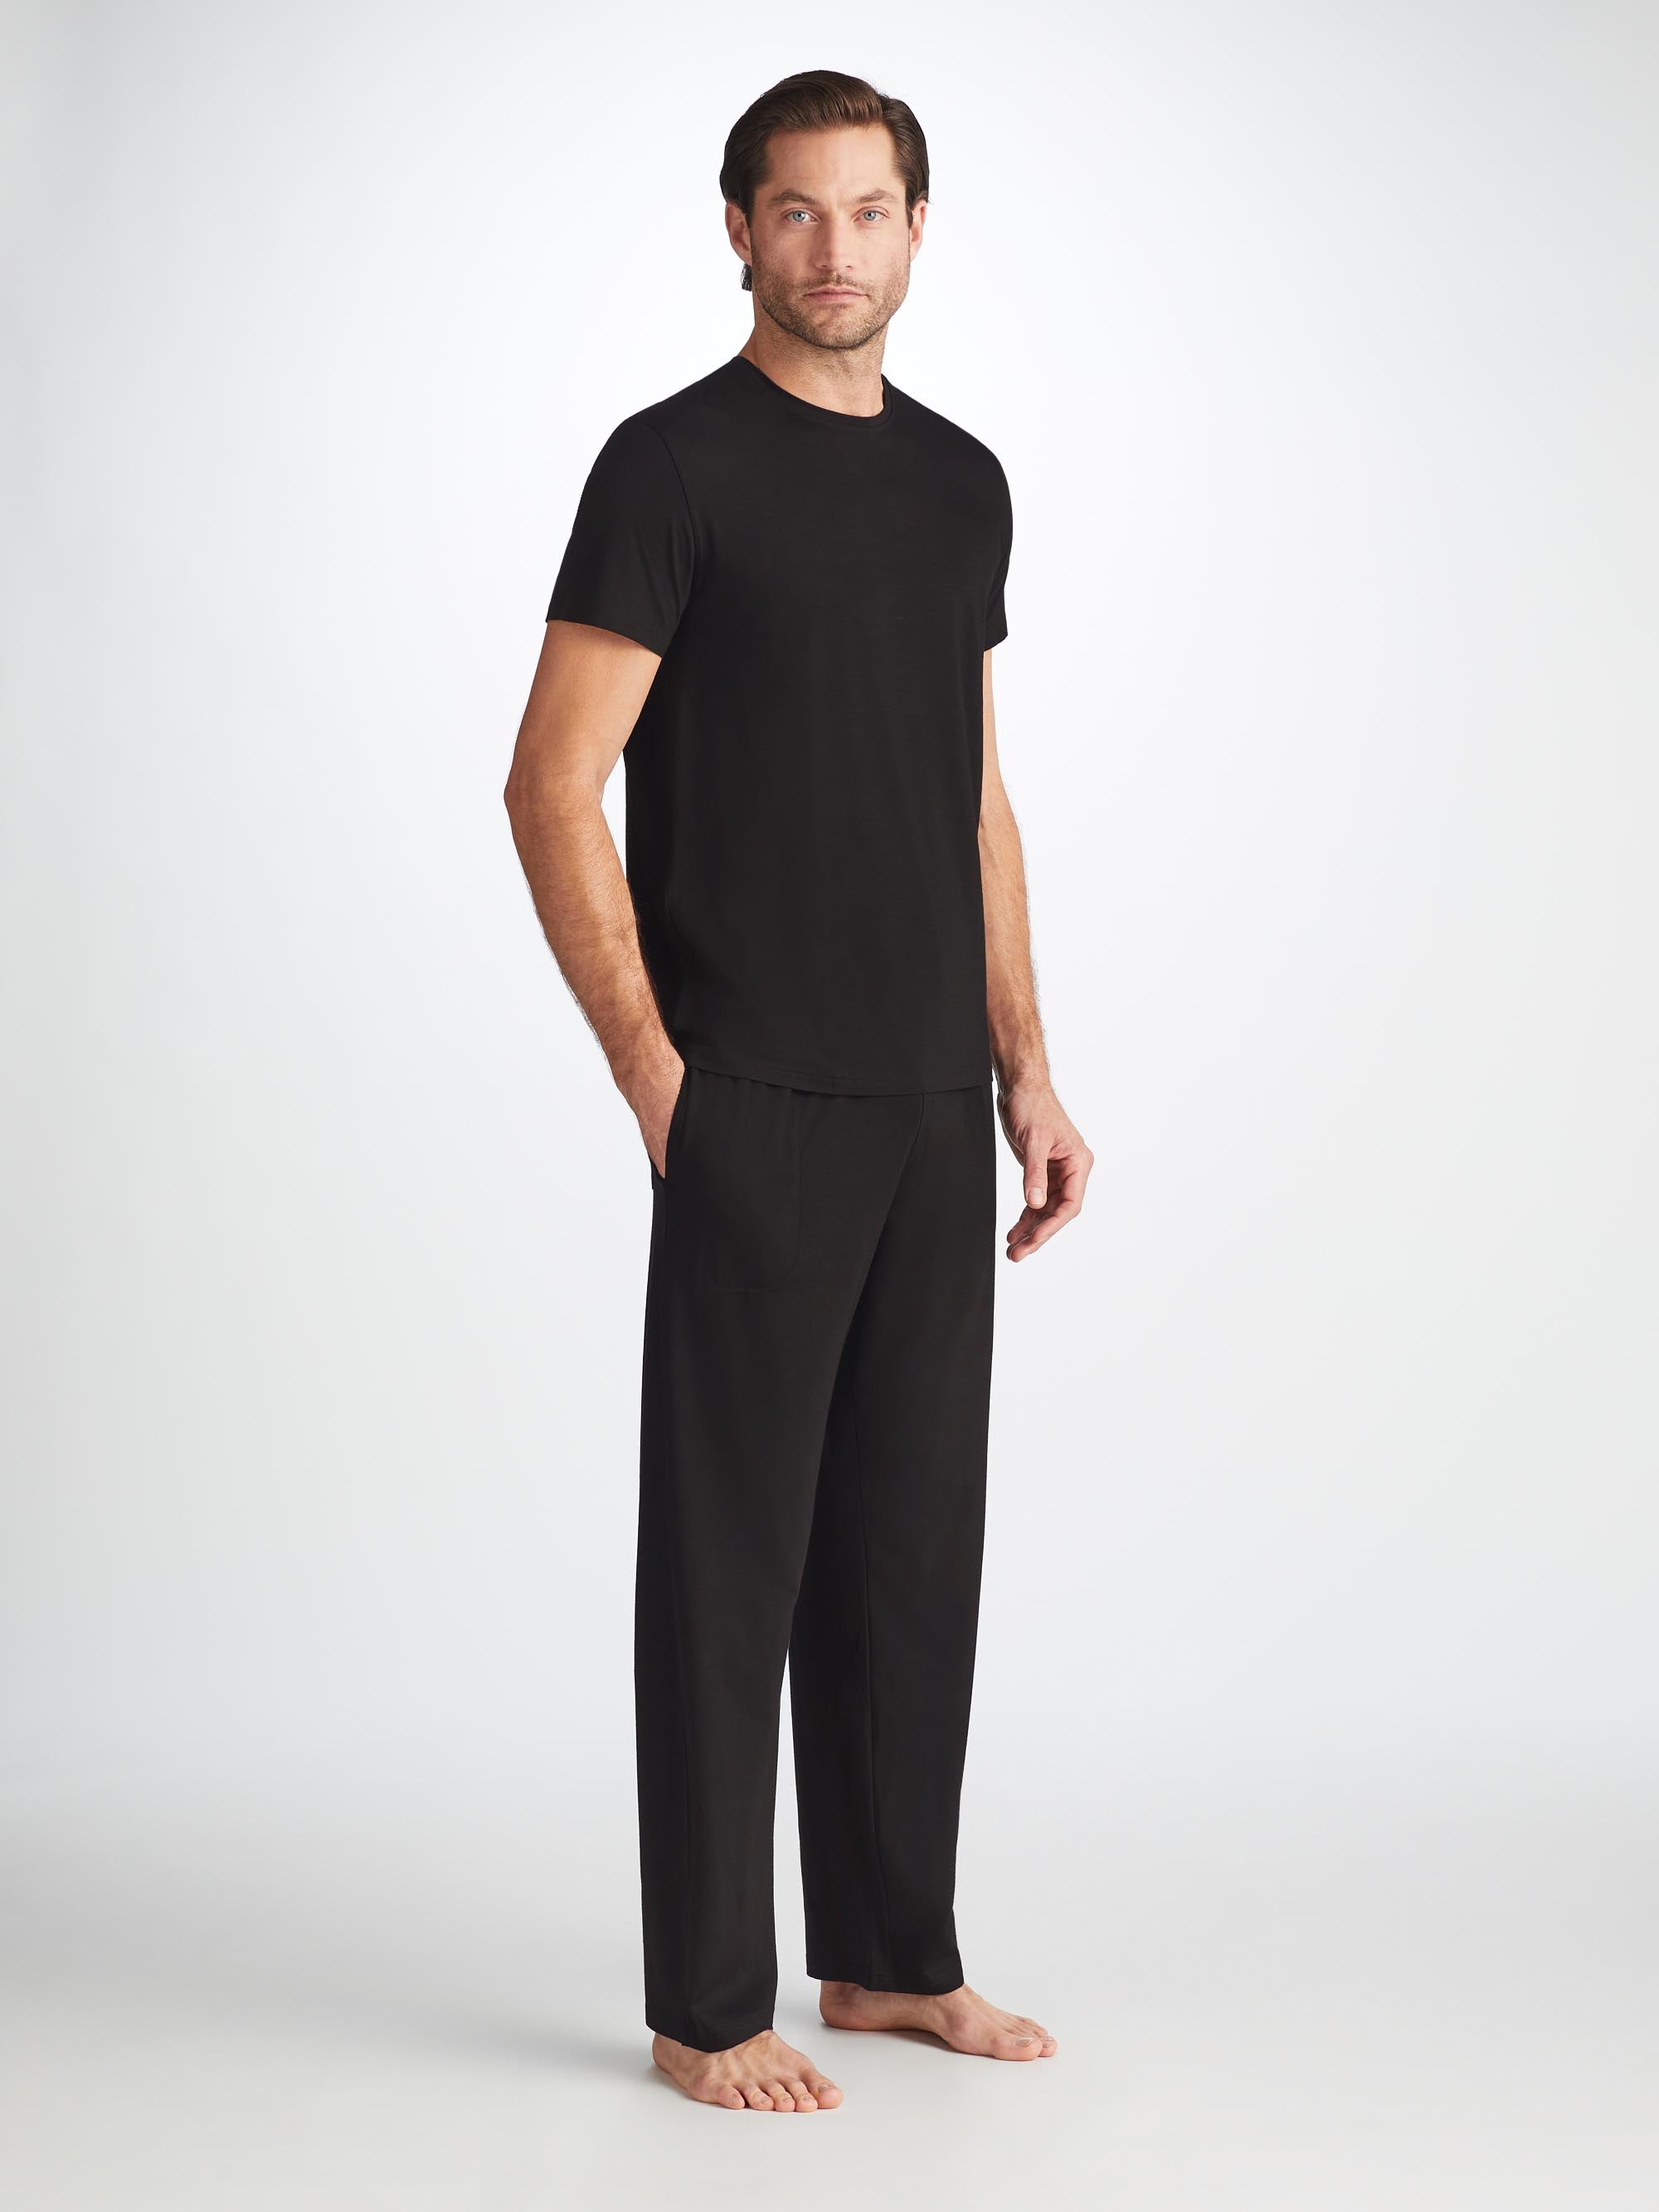 Men's Lounge Trousers Basel Micro Modal Stretch Black